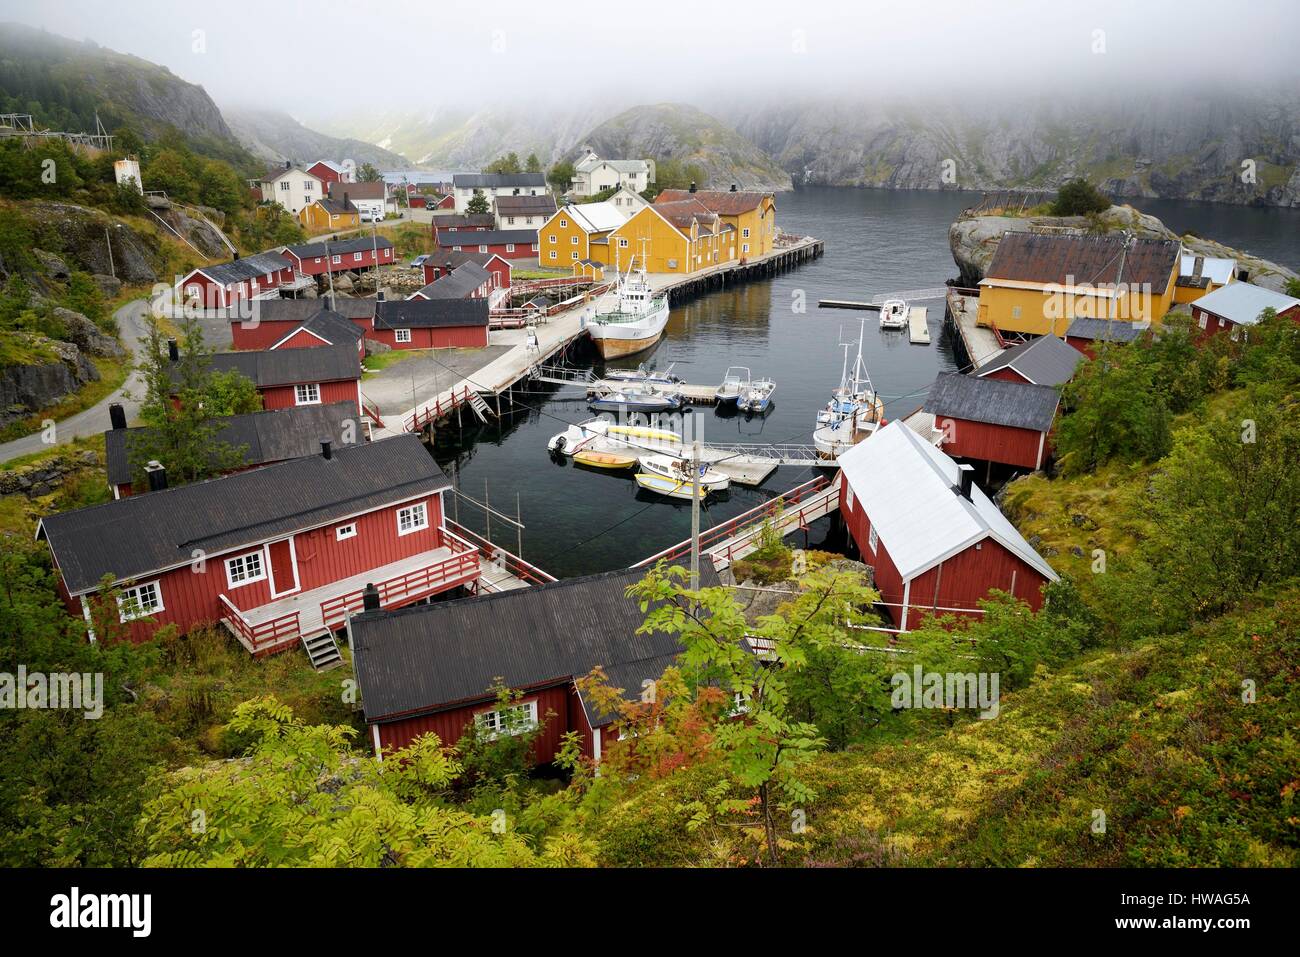 Norvegia, Nordland, isole Lofoten Flakstadoy island, il villaggio di pescatori di Nusfjord, piccolo porto di pescatori tradizionali cabine costruite su palafitte (rorbu Foto Stock